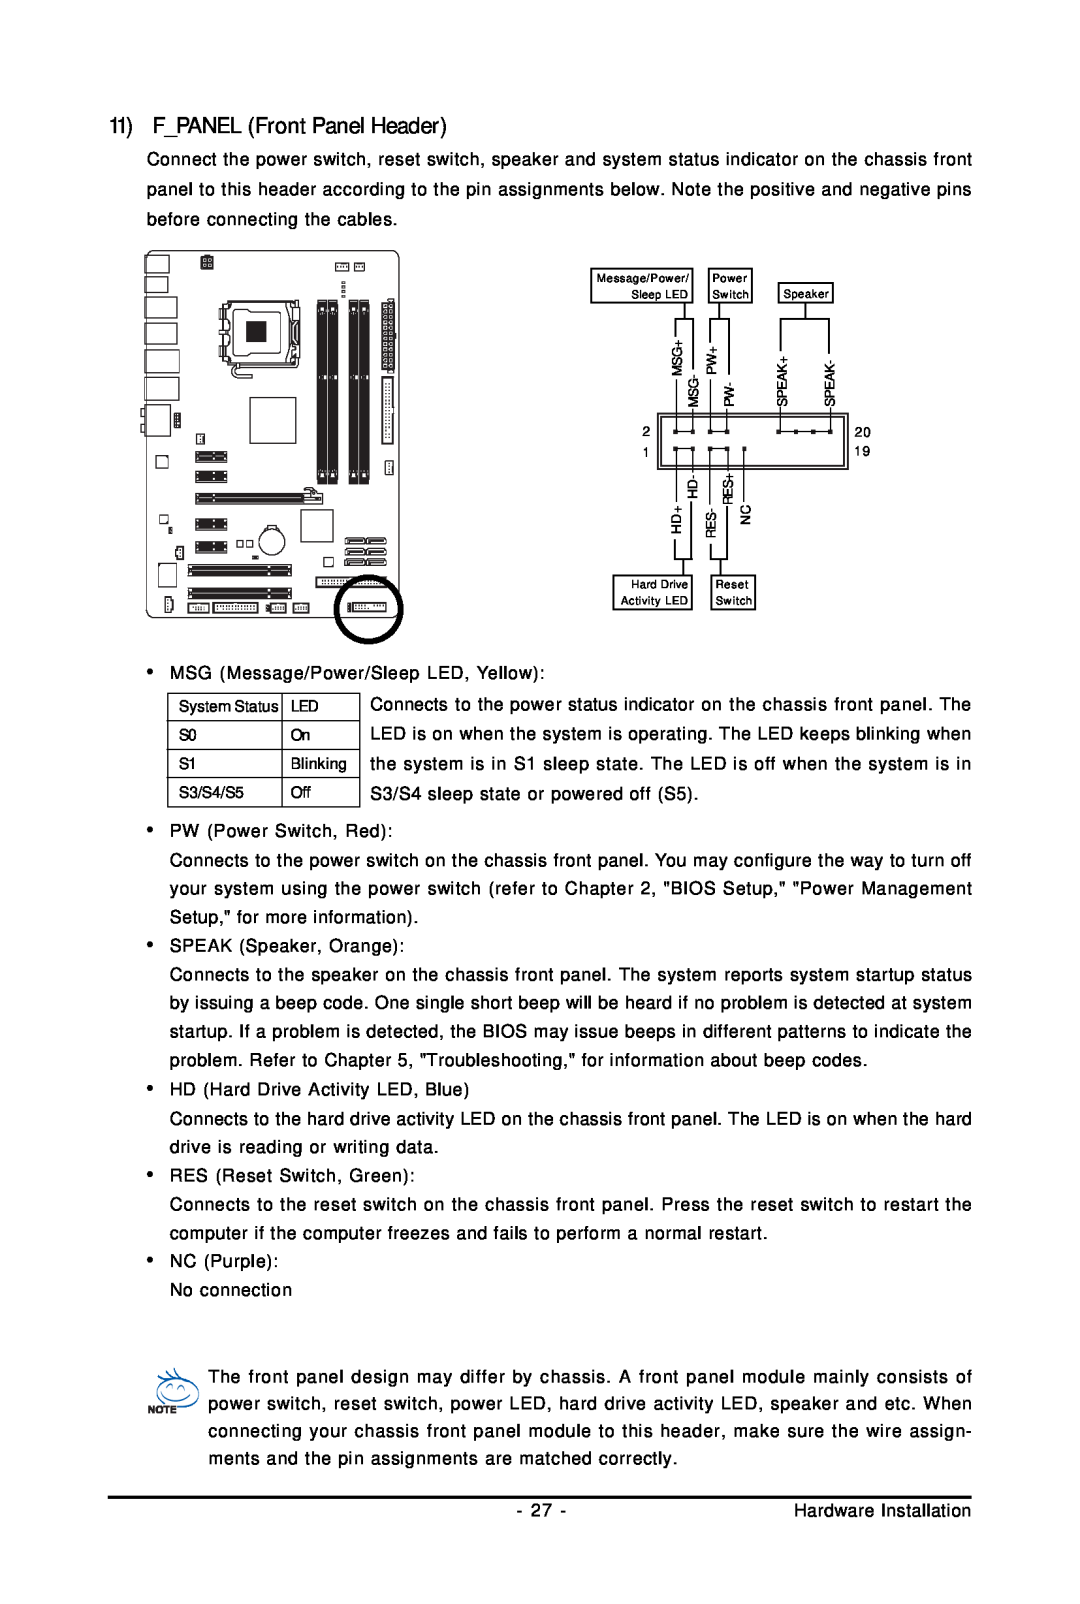 Gigabyte GA-EP45-UD3LR user manual FPANEL Front Panel Header 